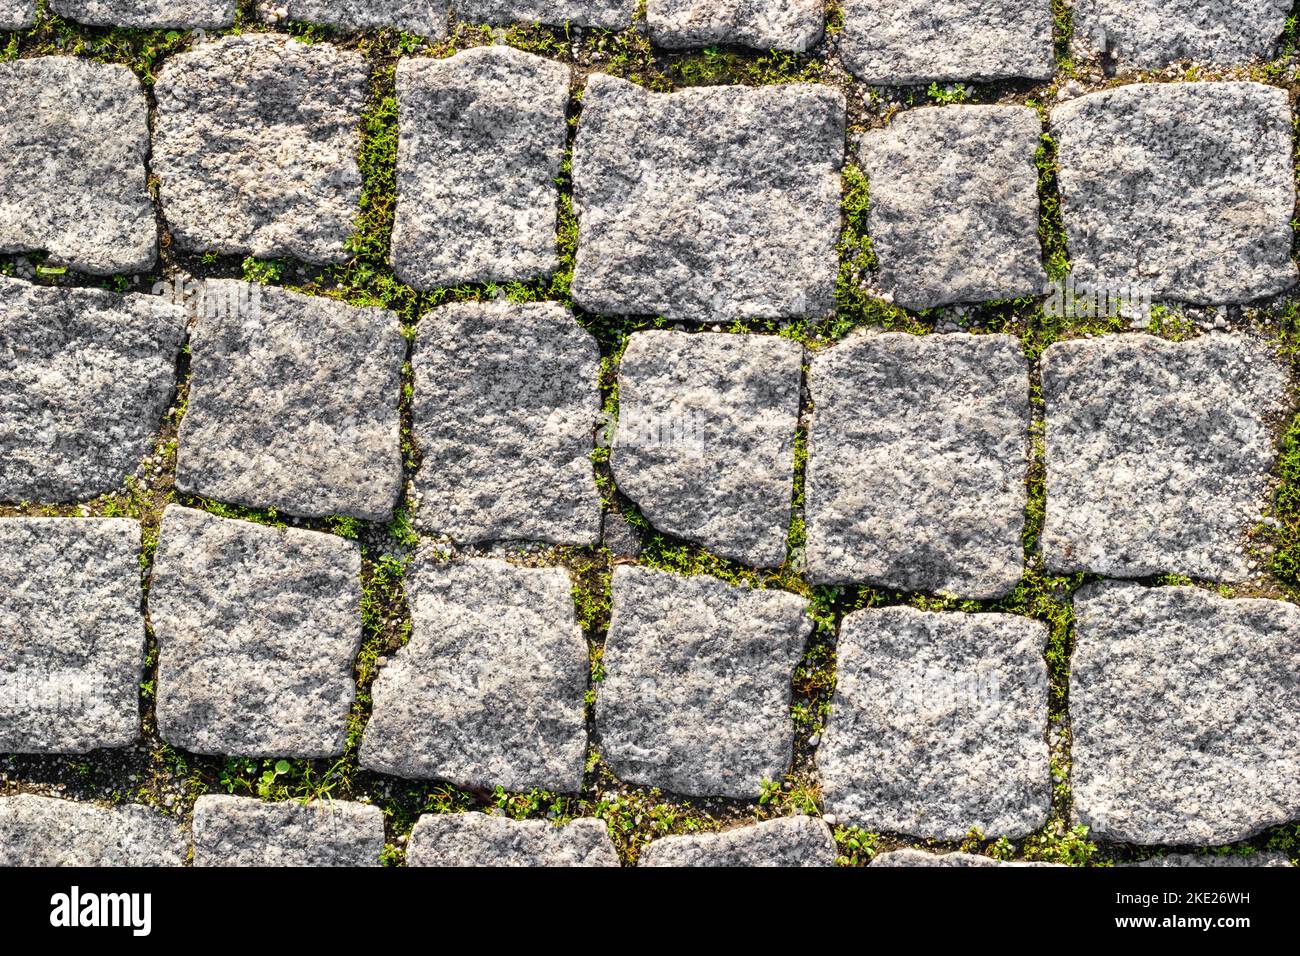 Struktur der gepflasterten Steinstraße mit asymmetrischen Steinen mit gesproßenem Gras an den Nähten. Draufsicht Stockfoto